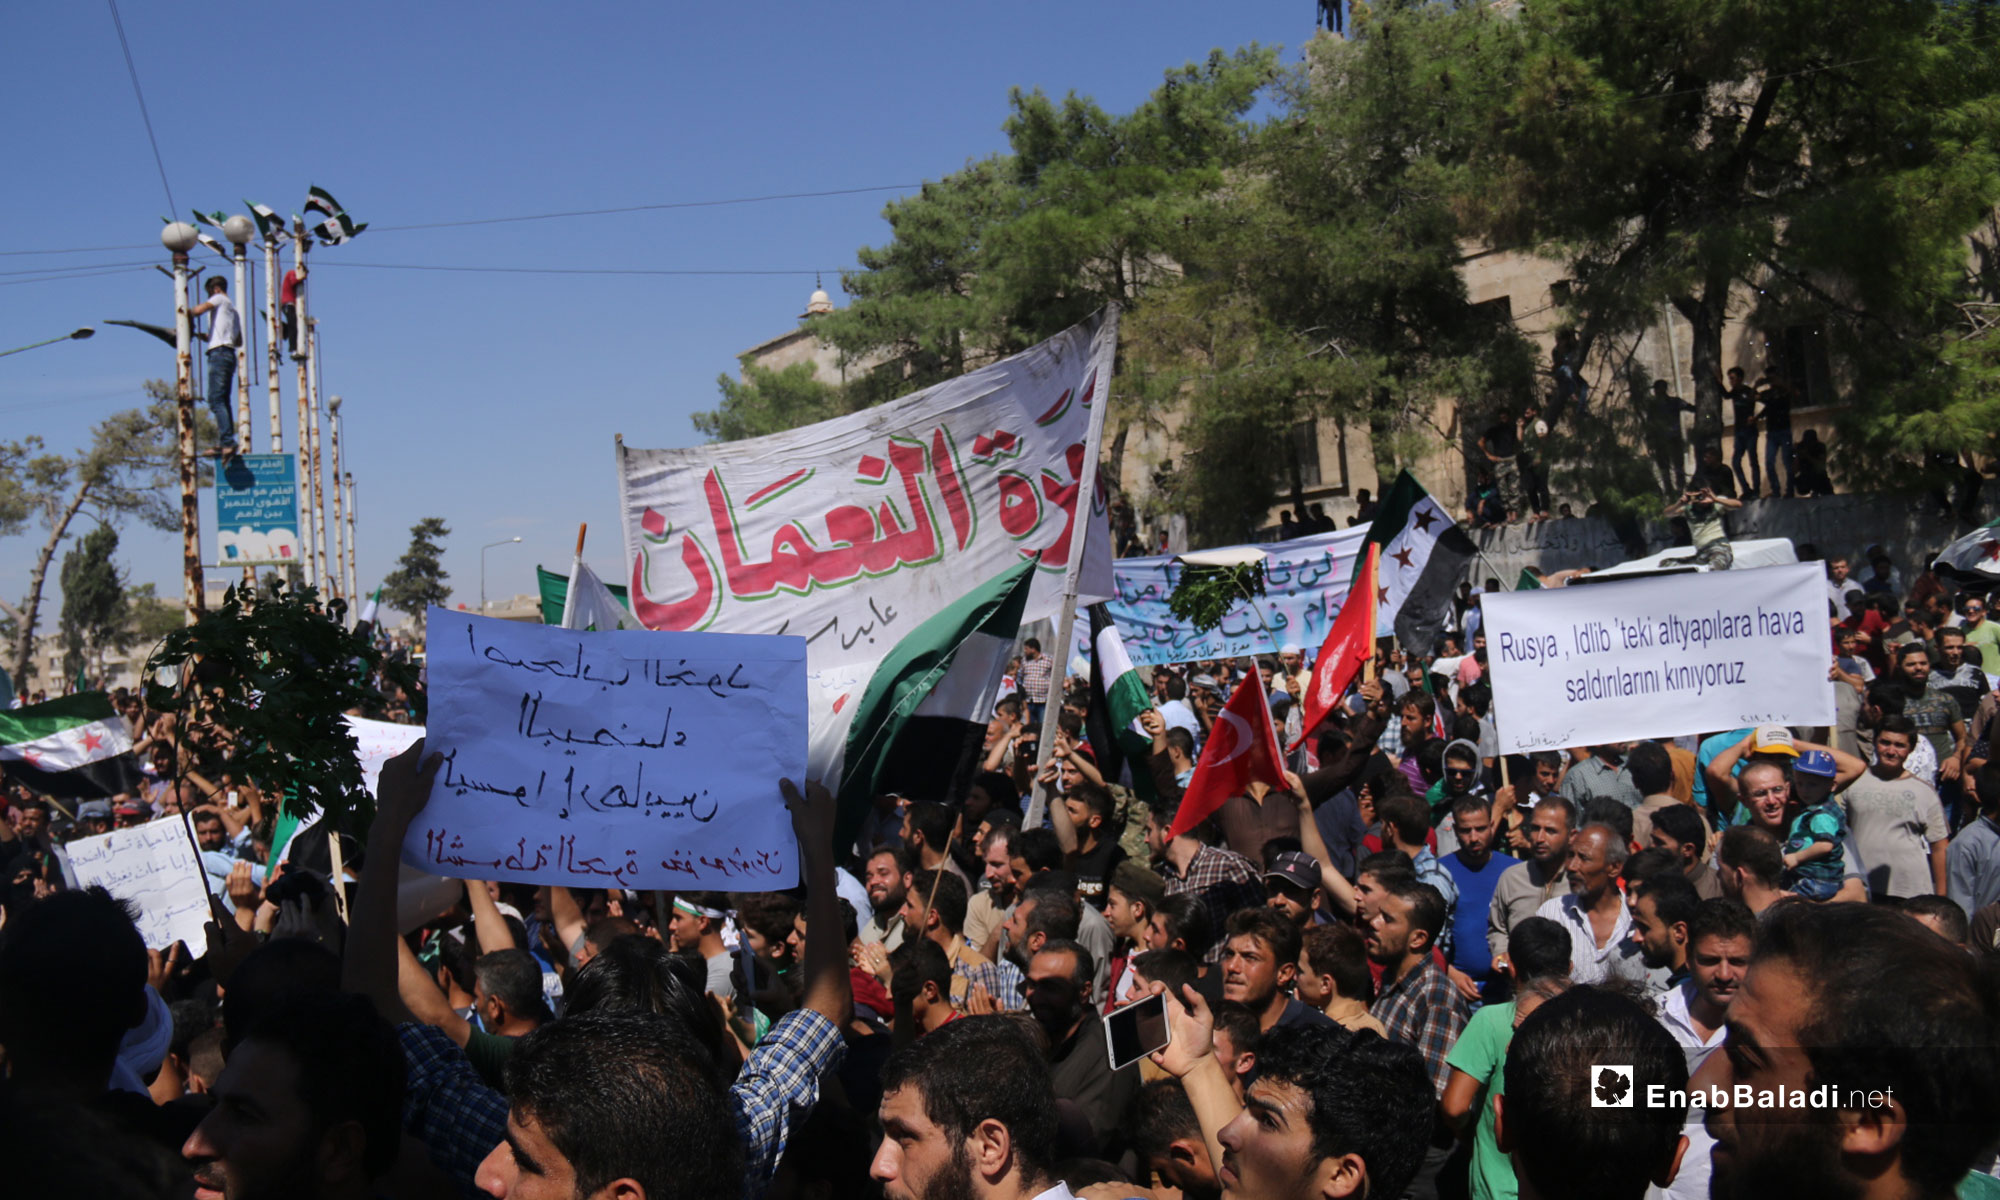 مظاهرة في معرة النعمان رفضًا للتدخل الروسي في إدلب - 7 من أيلول 2018 (عنب بلدي)